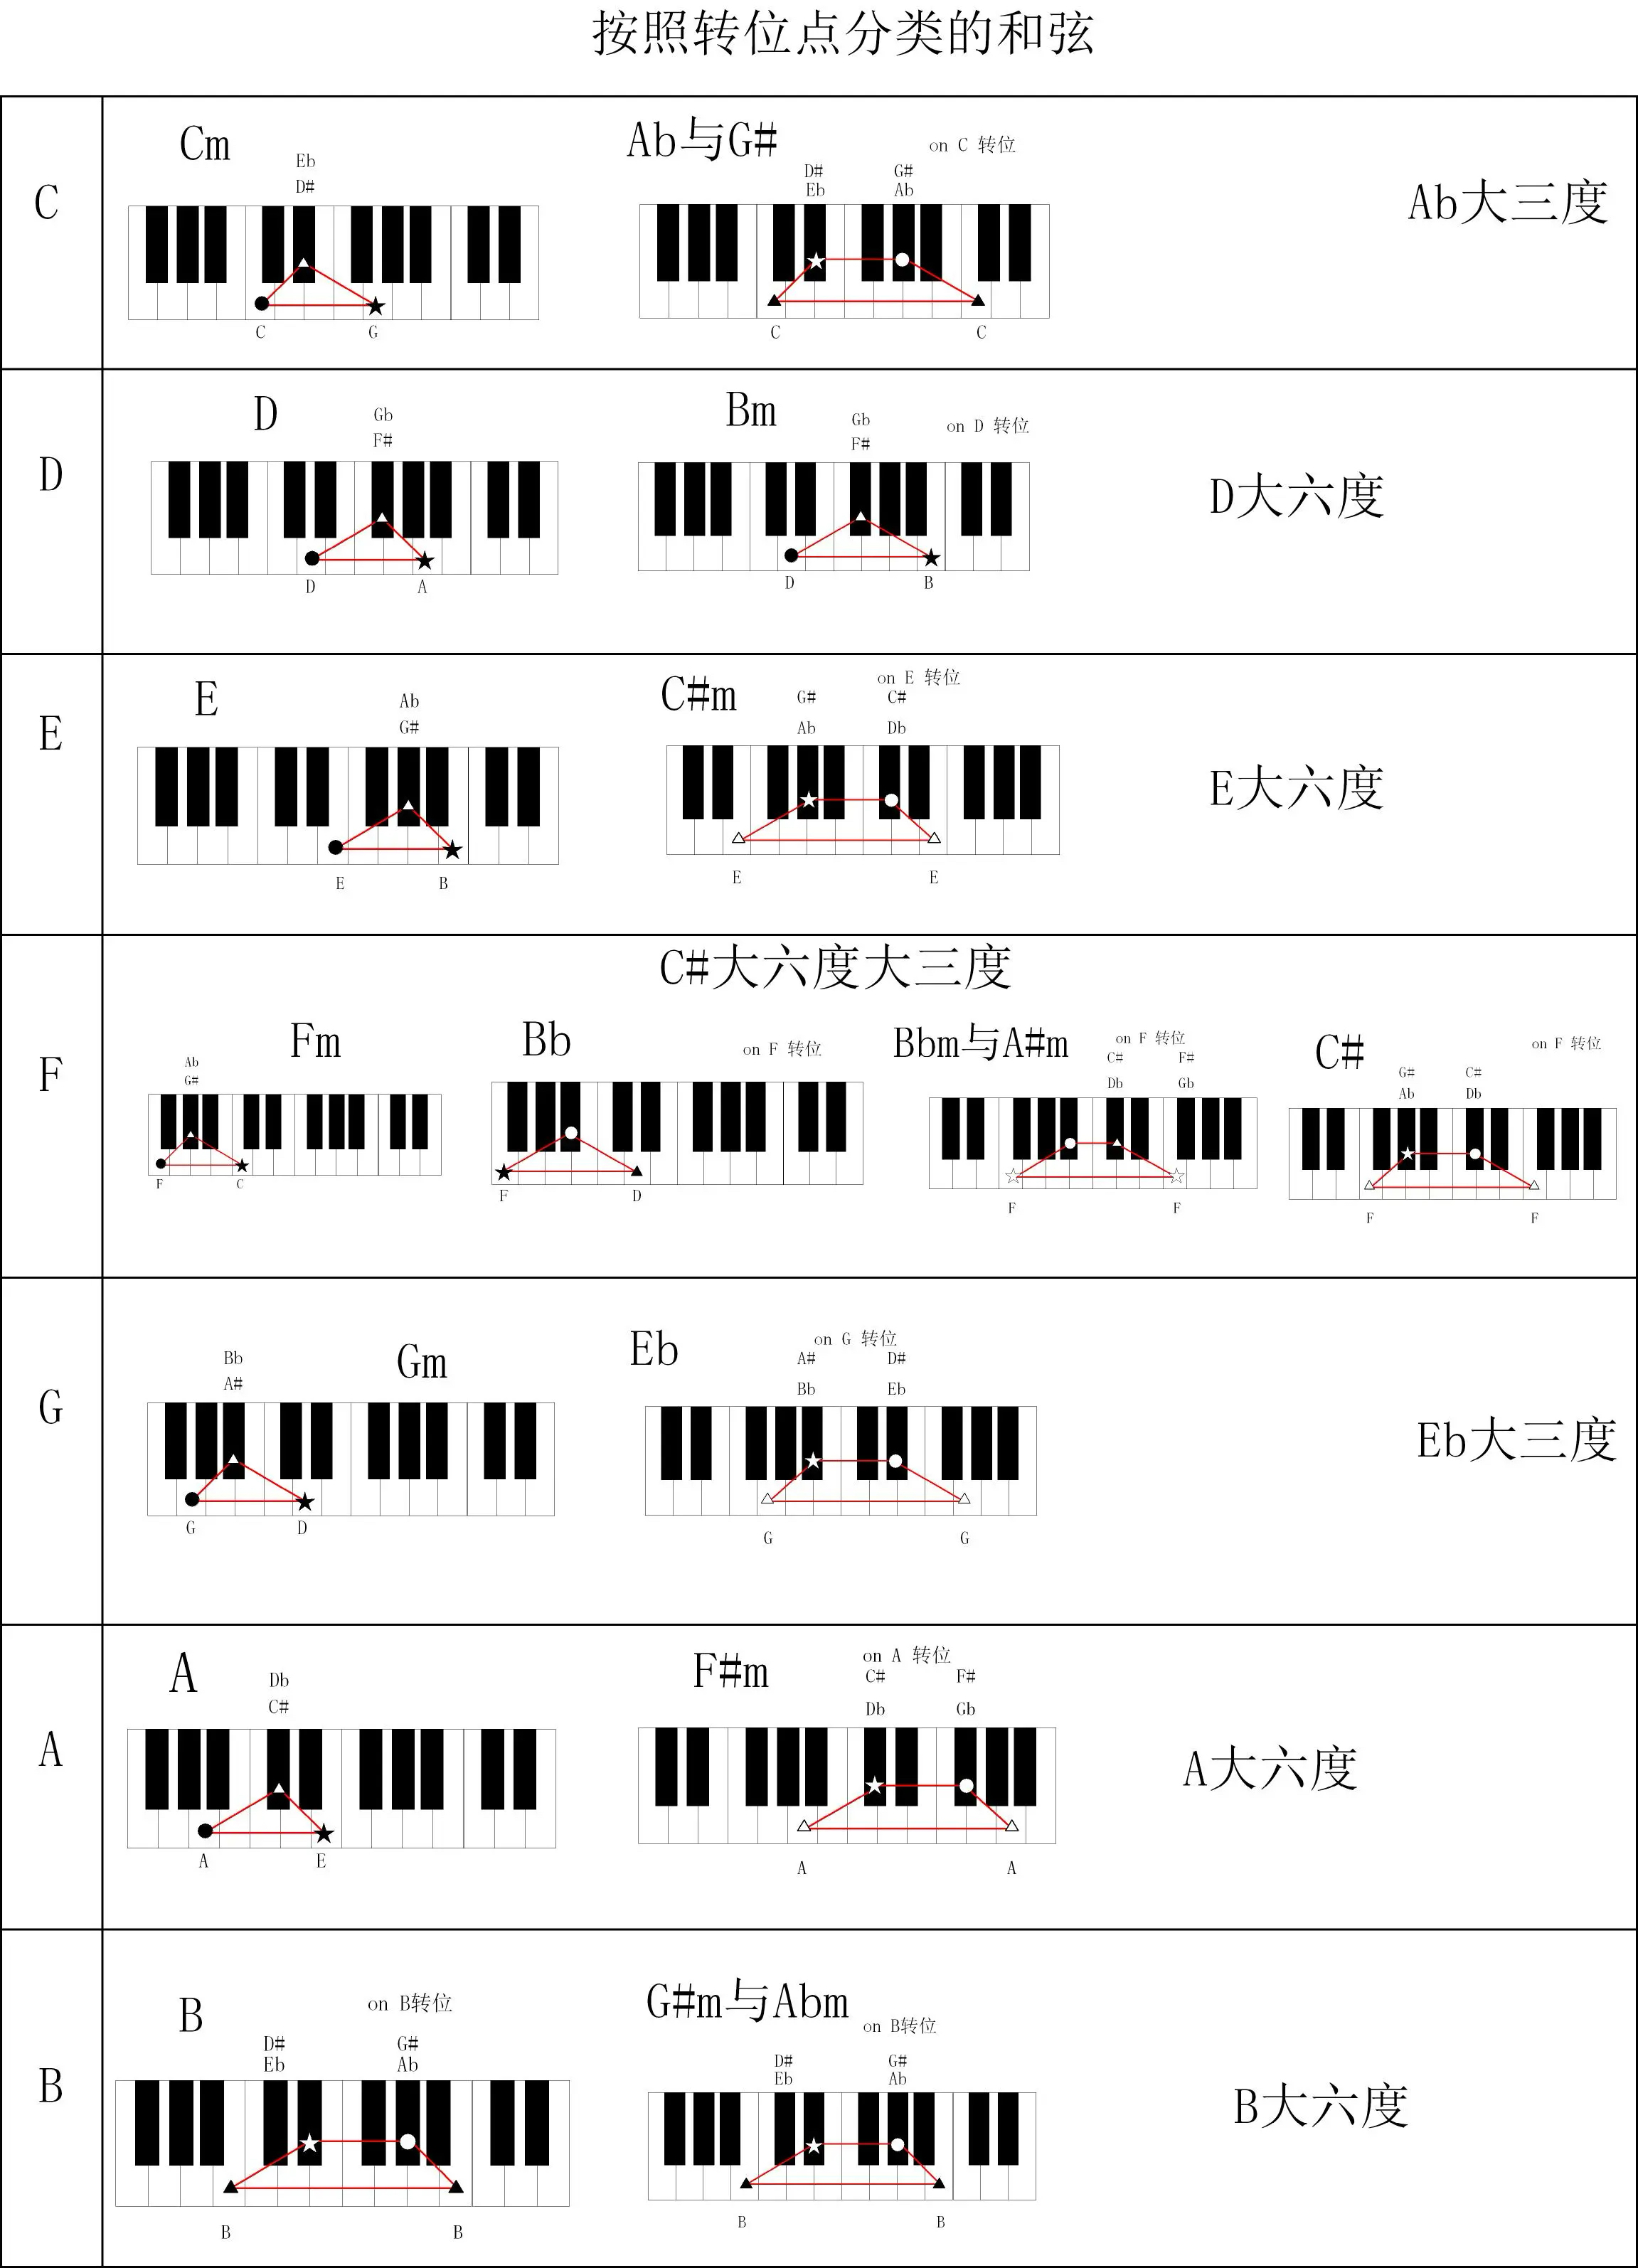 钢琴G调分解和弦图片